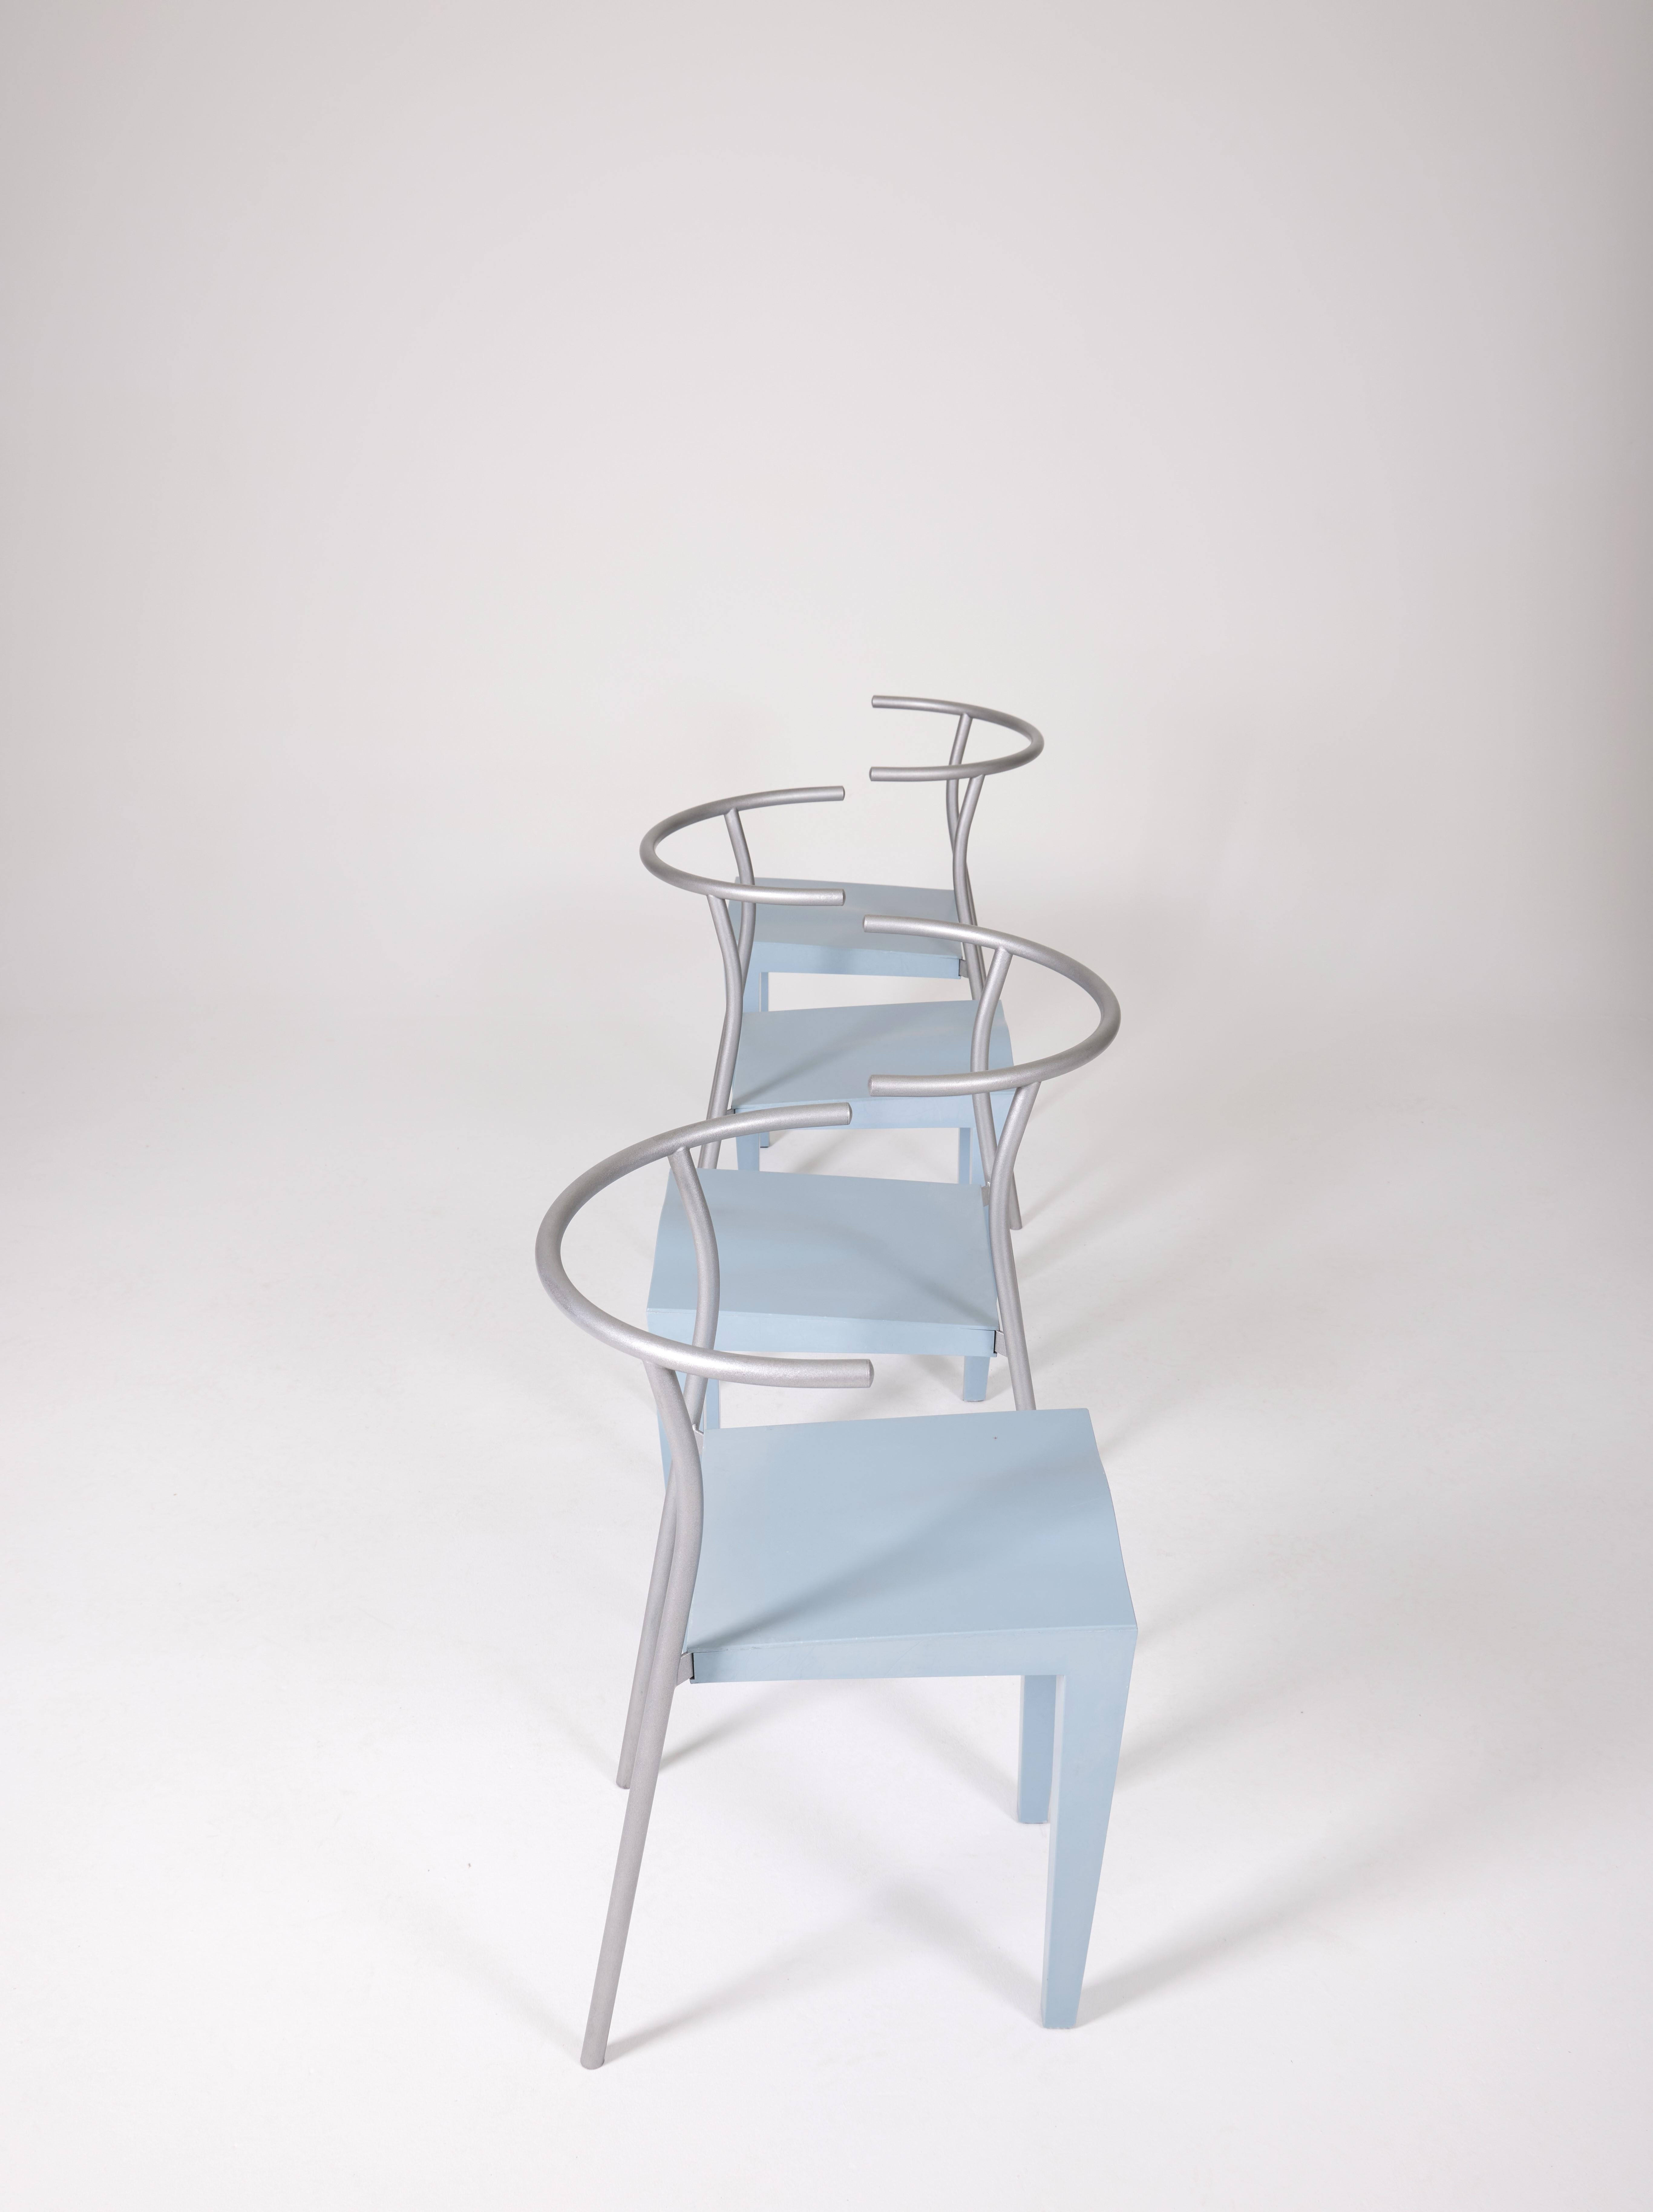 Fin du 20e siècle Ensemble de chaises Dr Glob de Philippe Starck 1988 